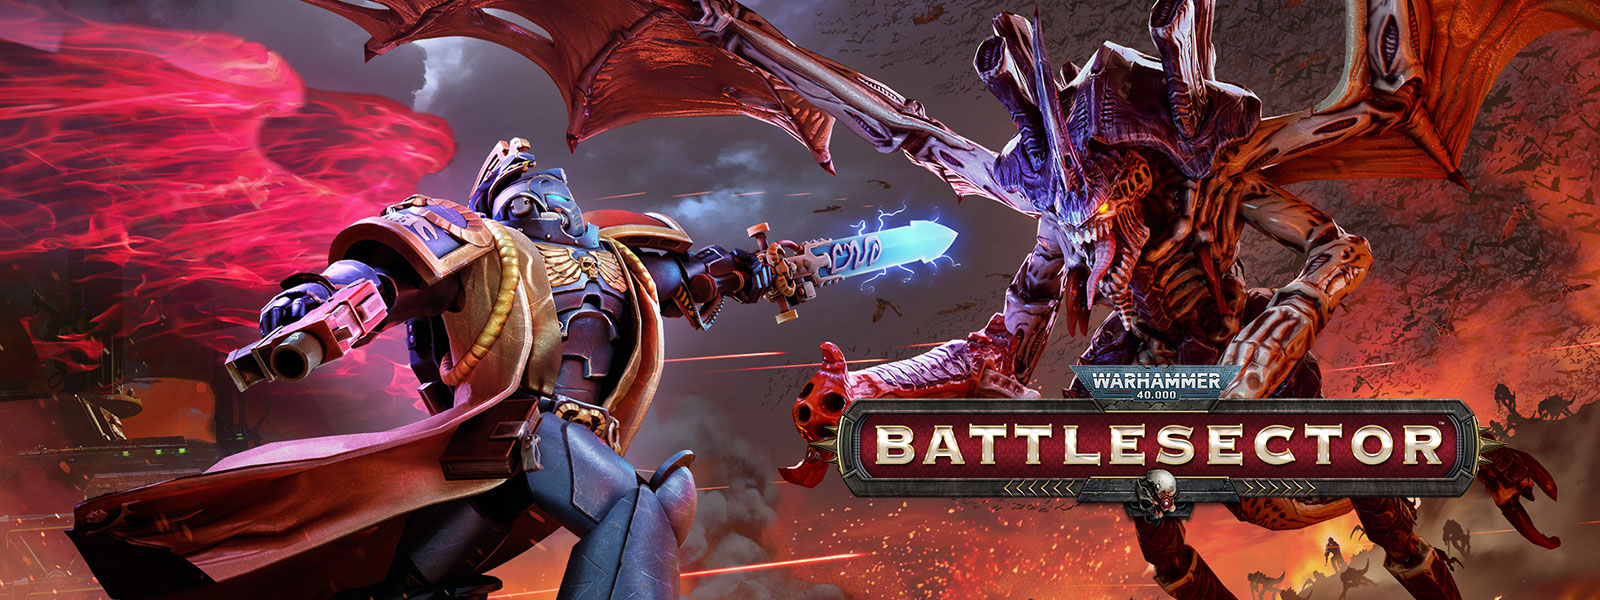 Warhammer 40,000: Battlesector, knihovník potkává Hive Tyranta v bitvě.